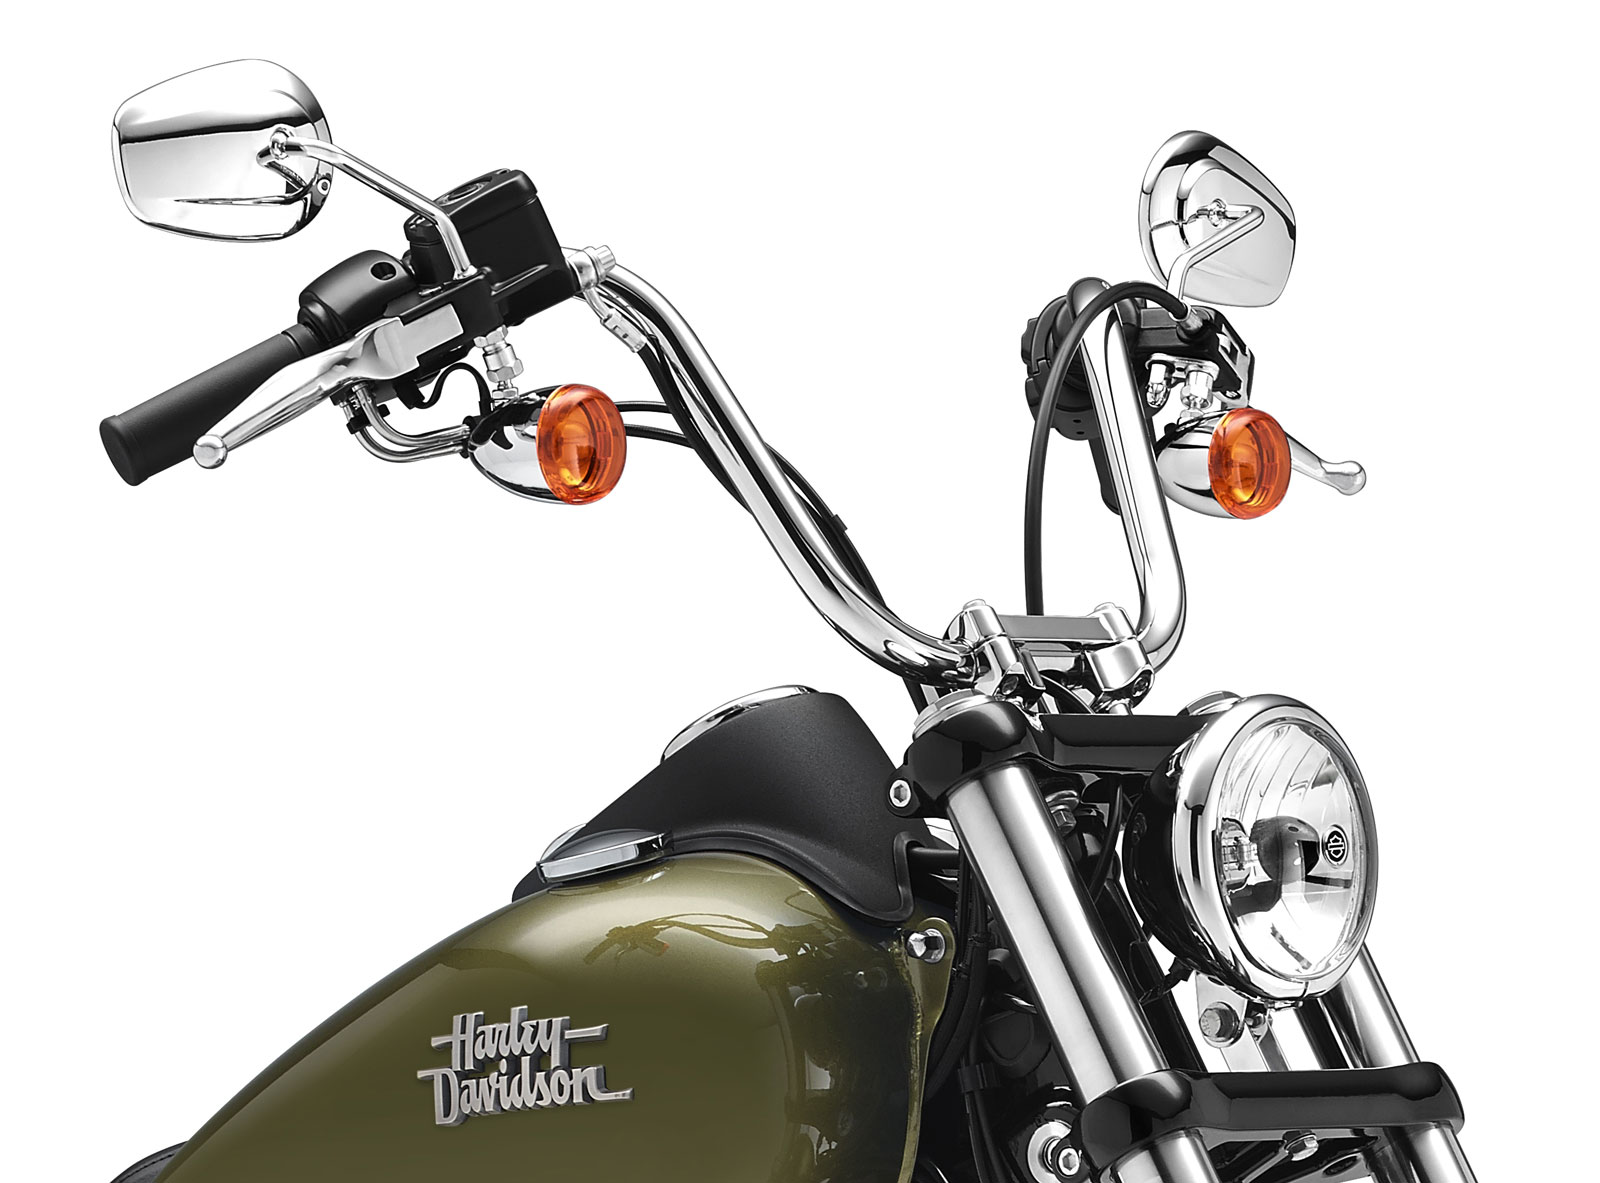 56951 09b Harley Davidson H D Original Handlebar For Street Bob 13 17 At Thunderbike Shop